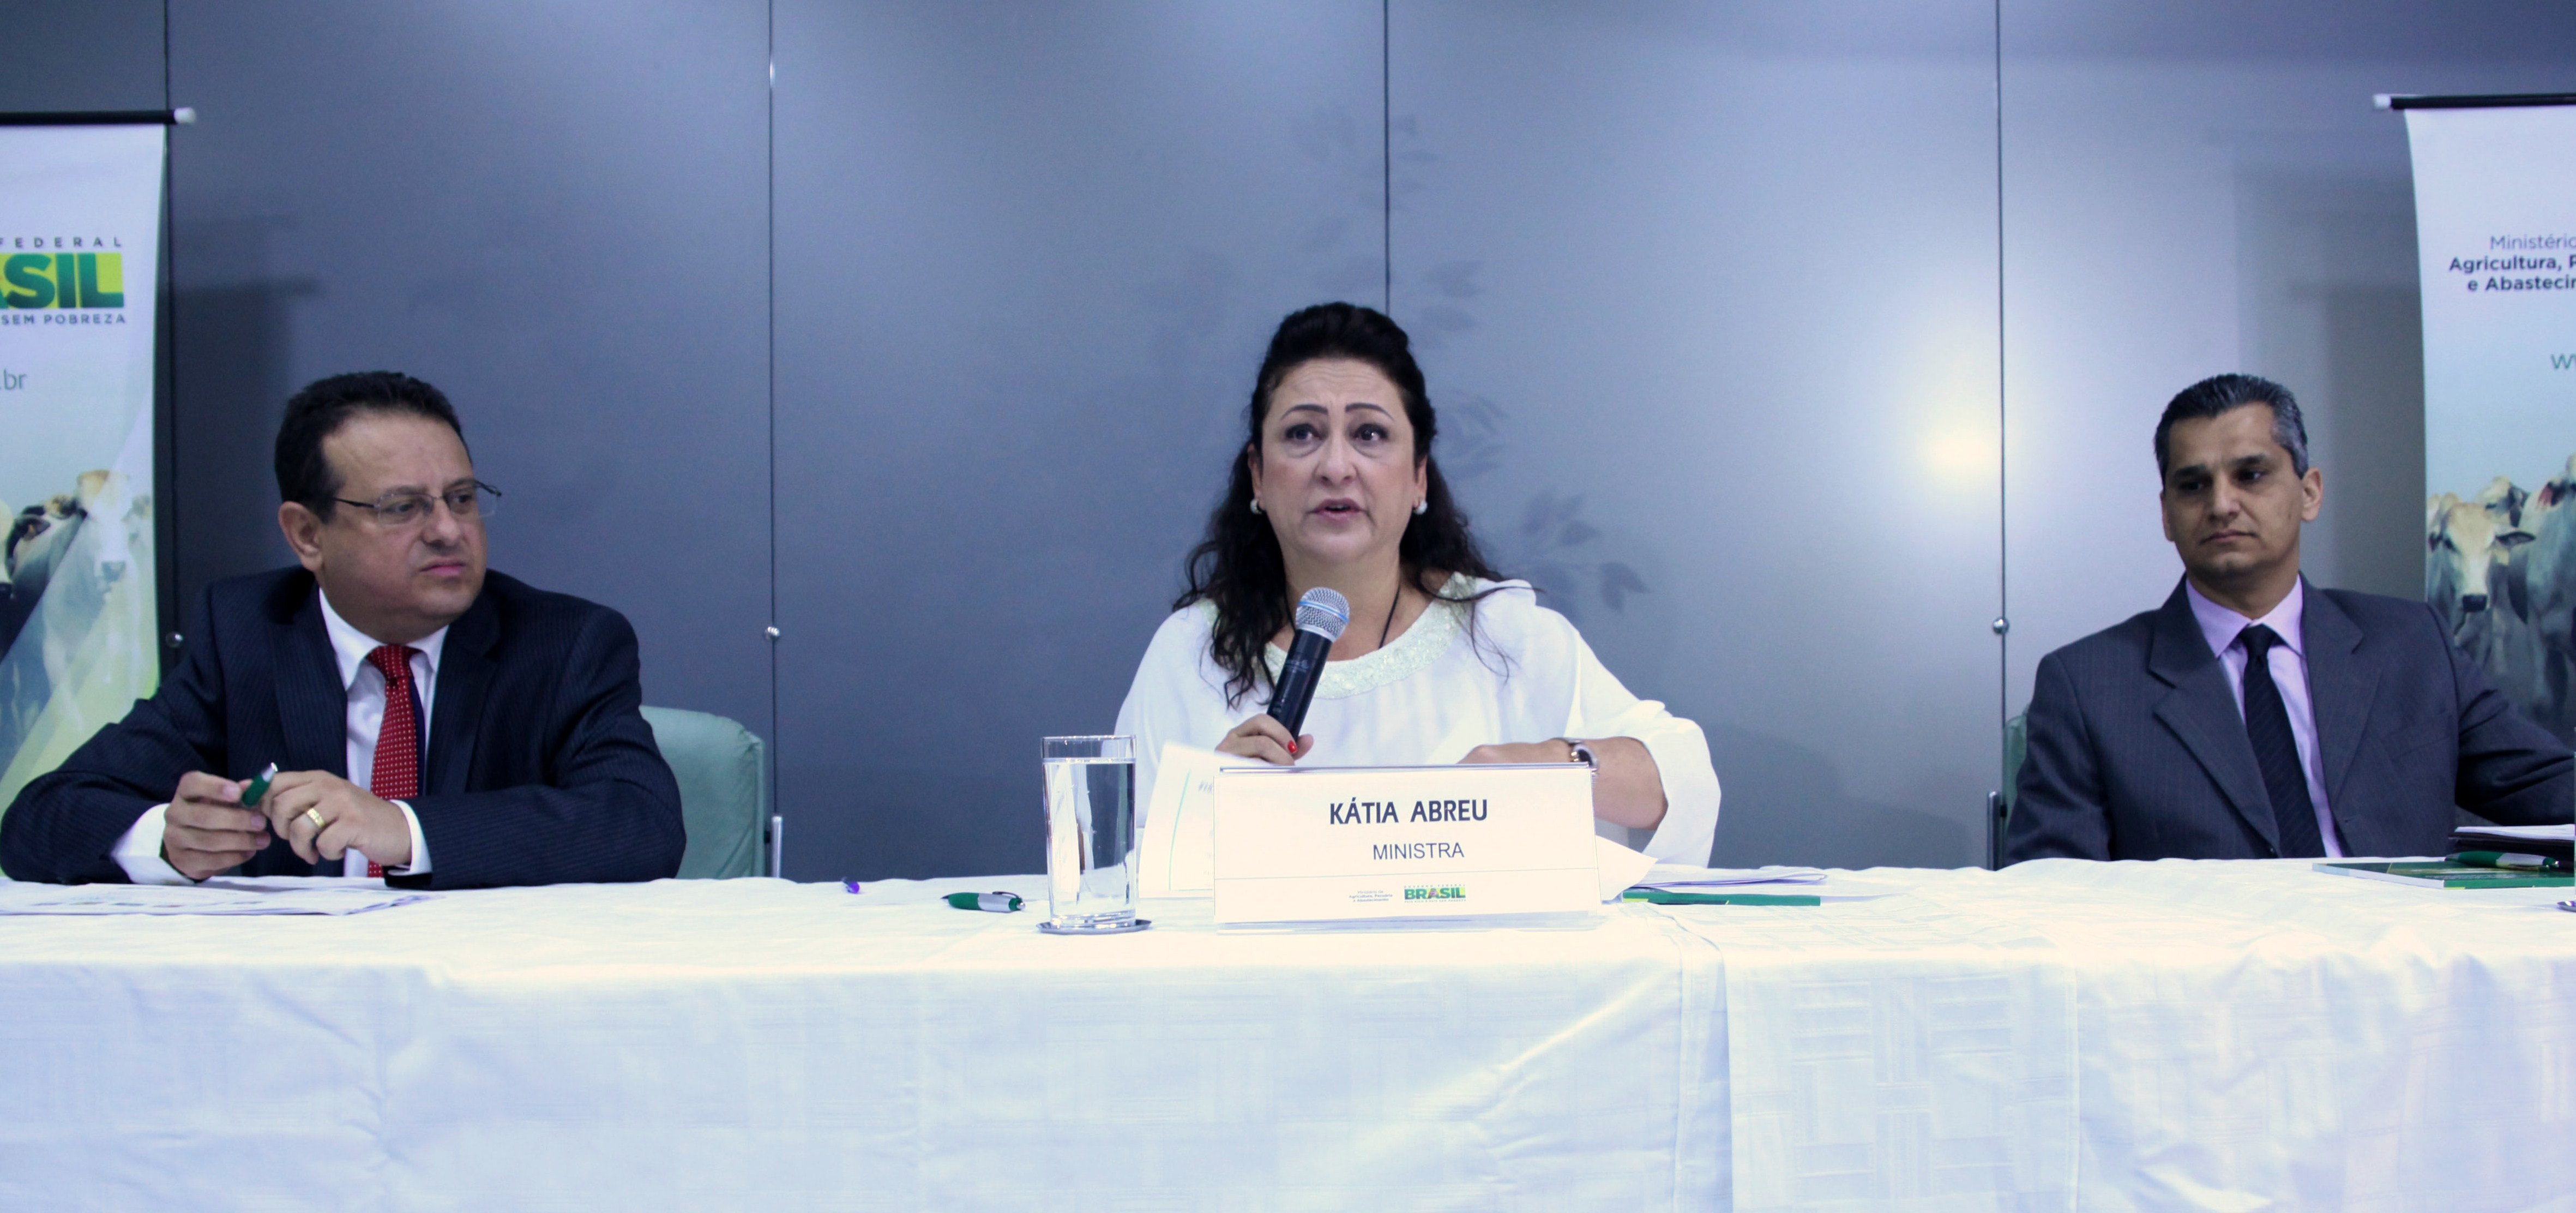 Kátia Abreu diz que anúncio de safra traz boas notícias para o agronegócio